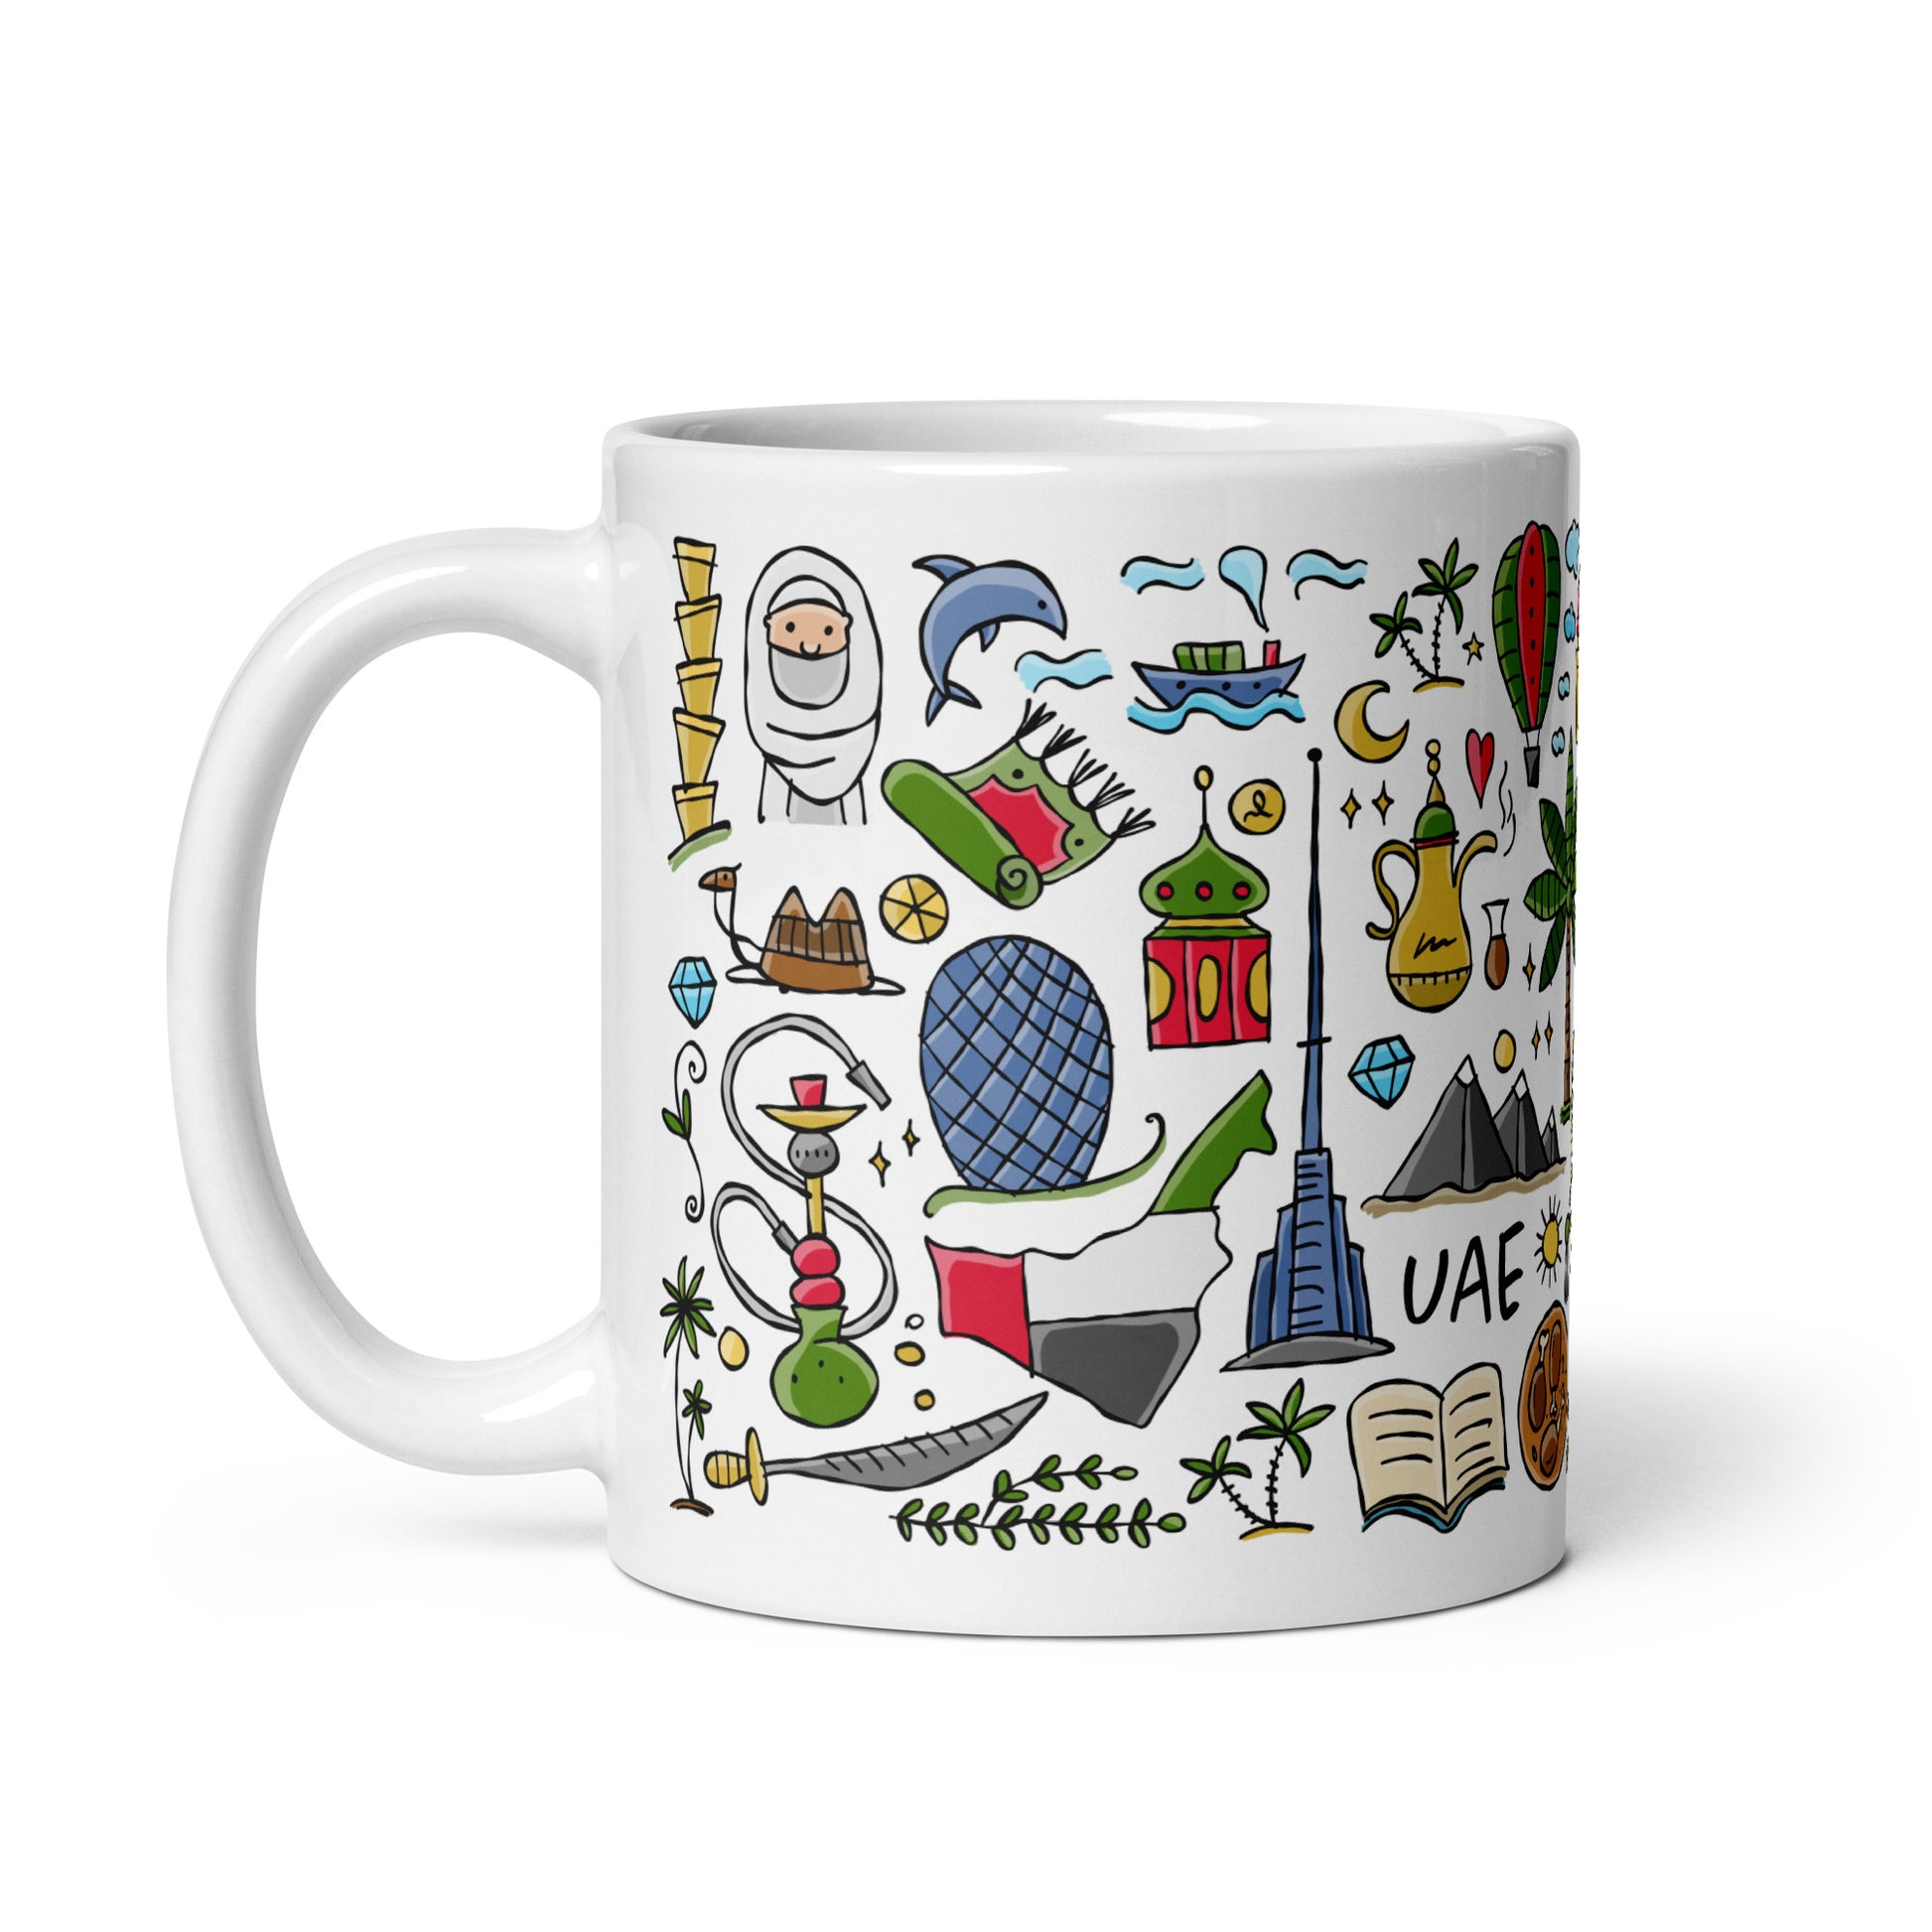 White ceramic Gift mug 11 oz with designer print Dubai UAE country 